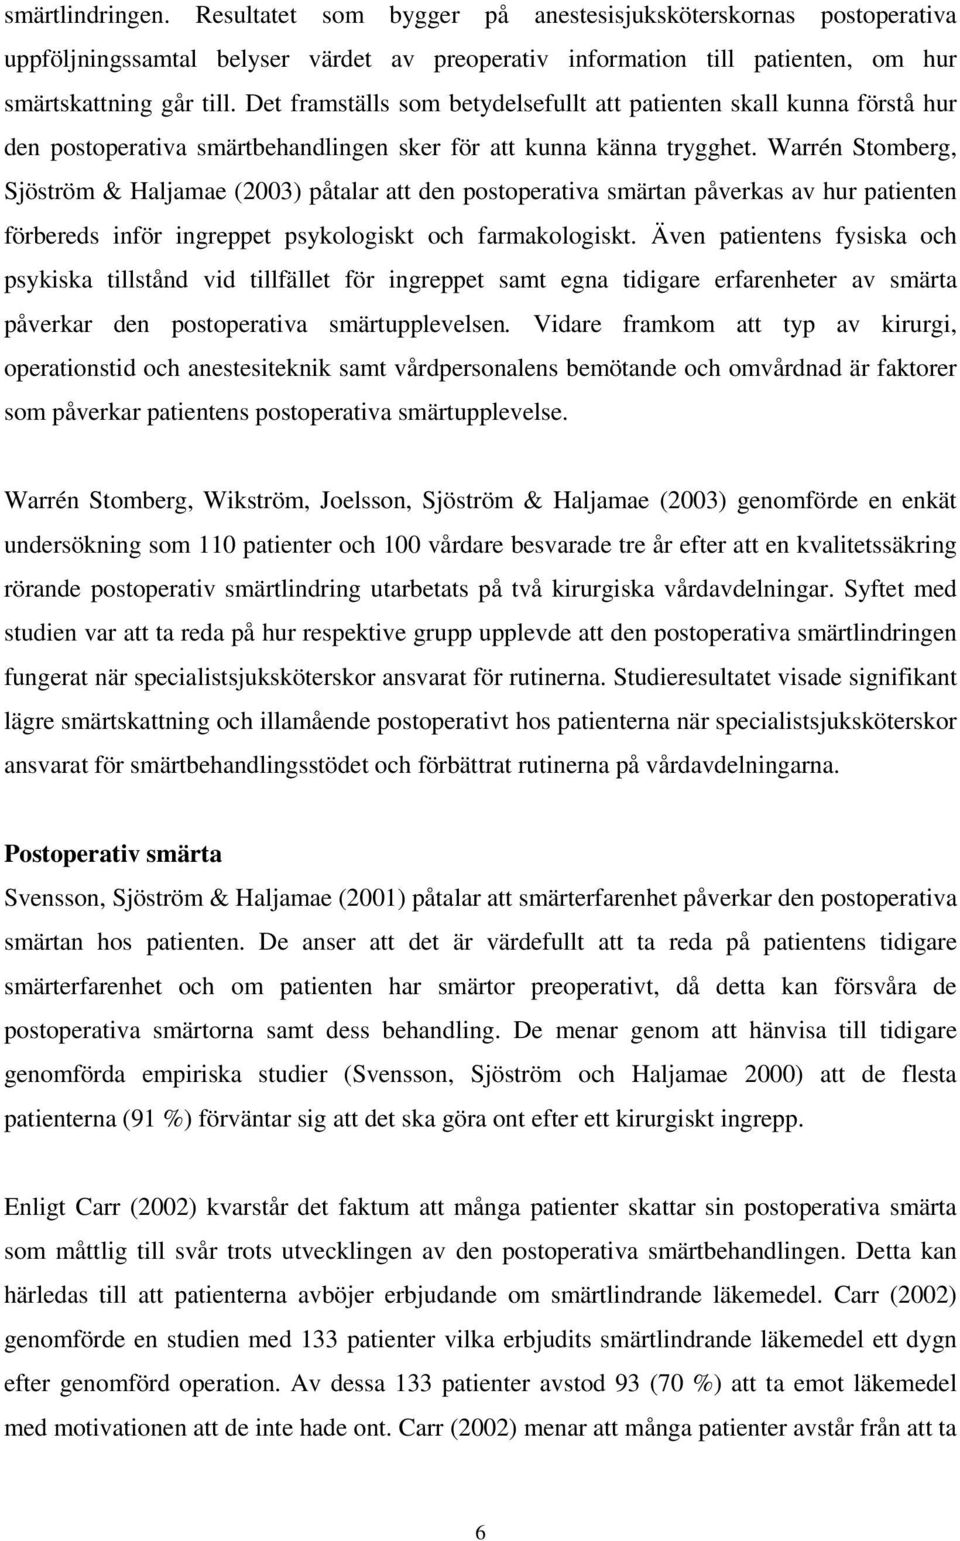 Warrén Stomberg, Sjöström & Haljamae (2003) påtalar att den postoperativa smärtan påverkas av hur patienten förbereds inför ingreppet psykologiskt och farmakologiskt.